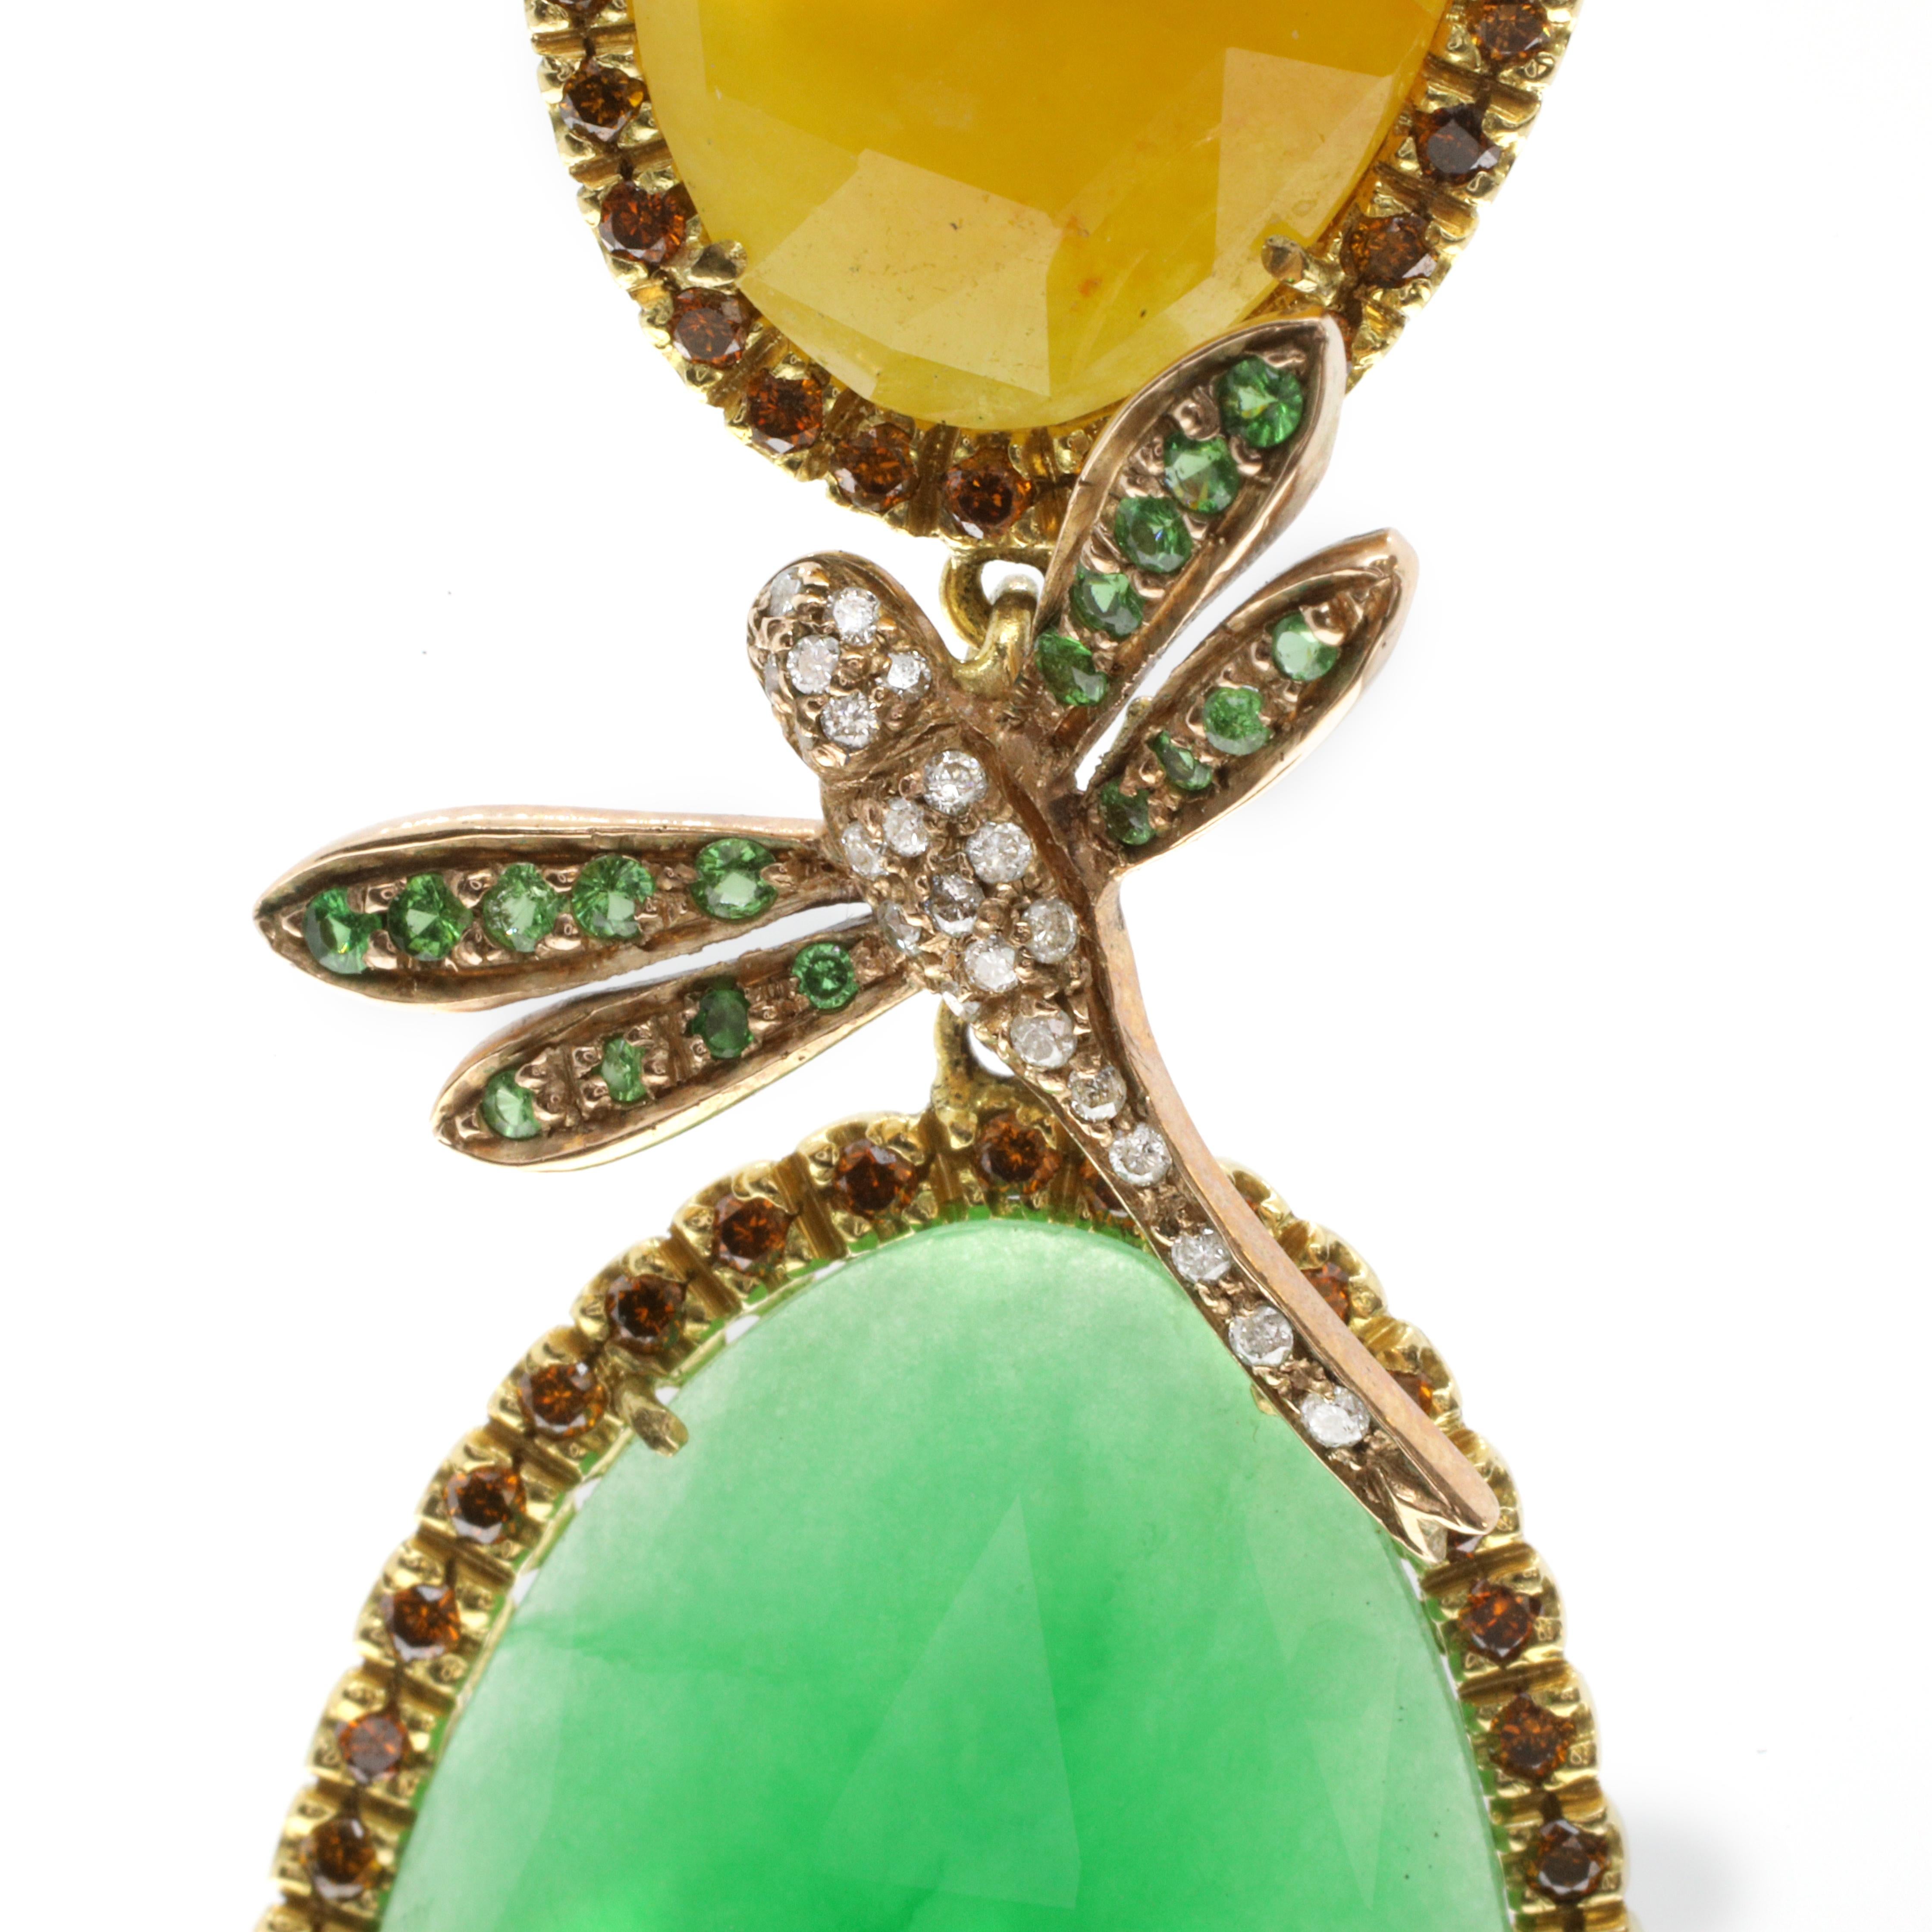 Diese spektakulären Ohrringe aus 18 Karat Gelbgold sind mit leuchtenden Jadesteinen besetzt, die von einer einzigen Reihe cognacfarbener brauner Diamanten umrahmt werden. Zwischen den beiden Jadesteinen ist eine Libelle, die sich gerade im Flug